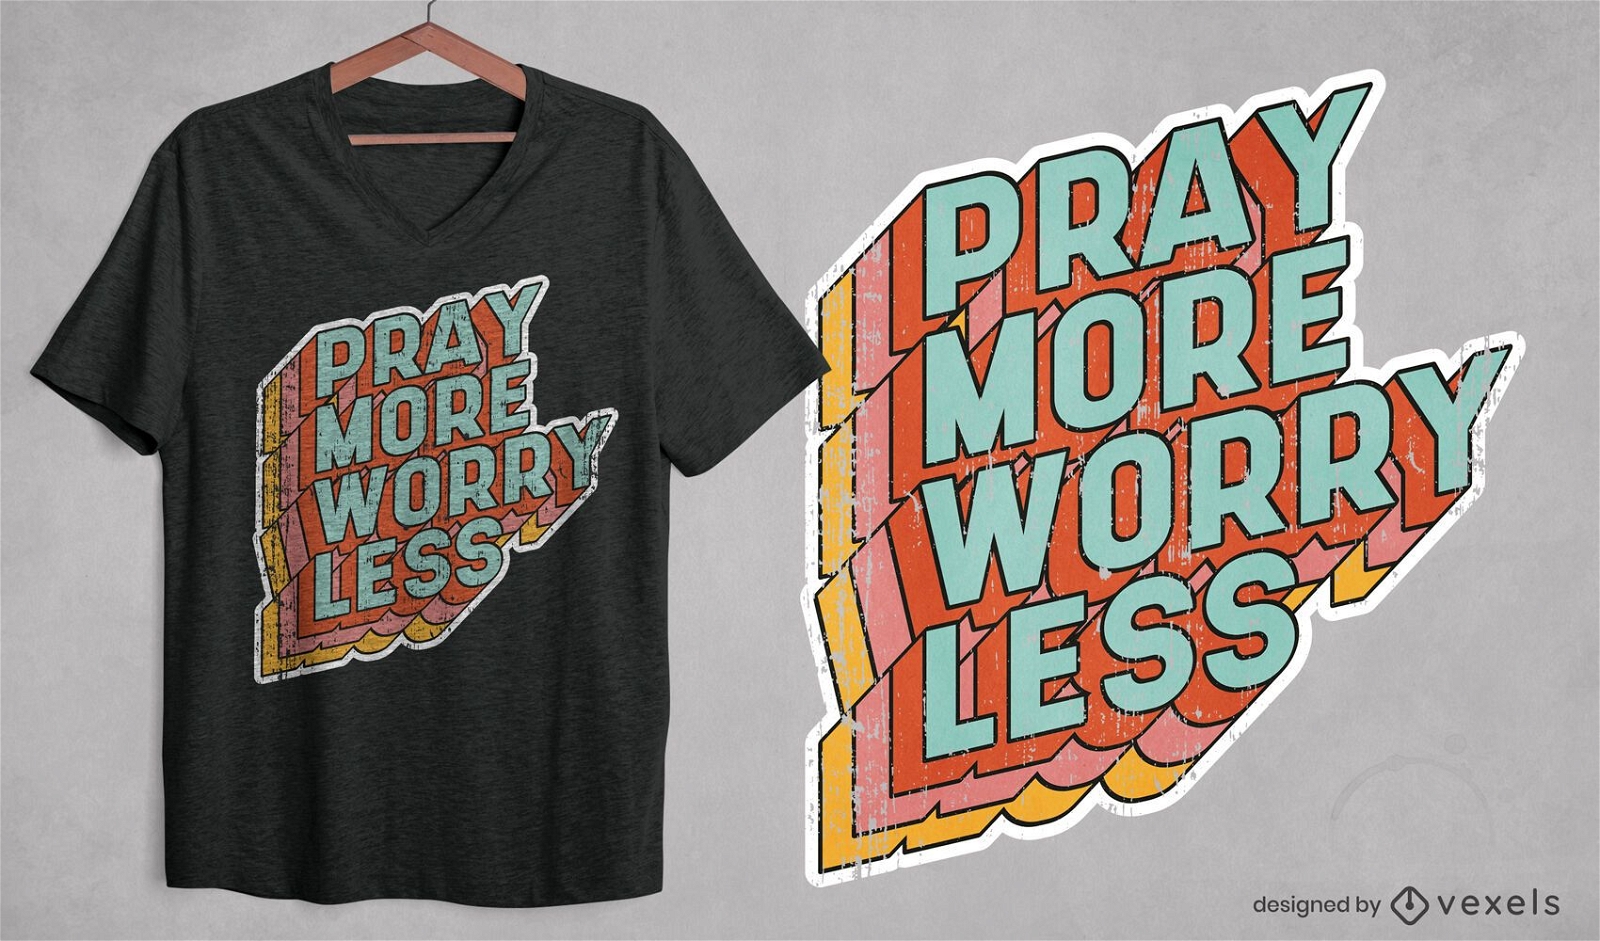 Pray more t-shirt design